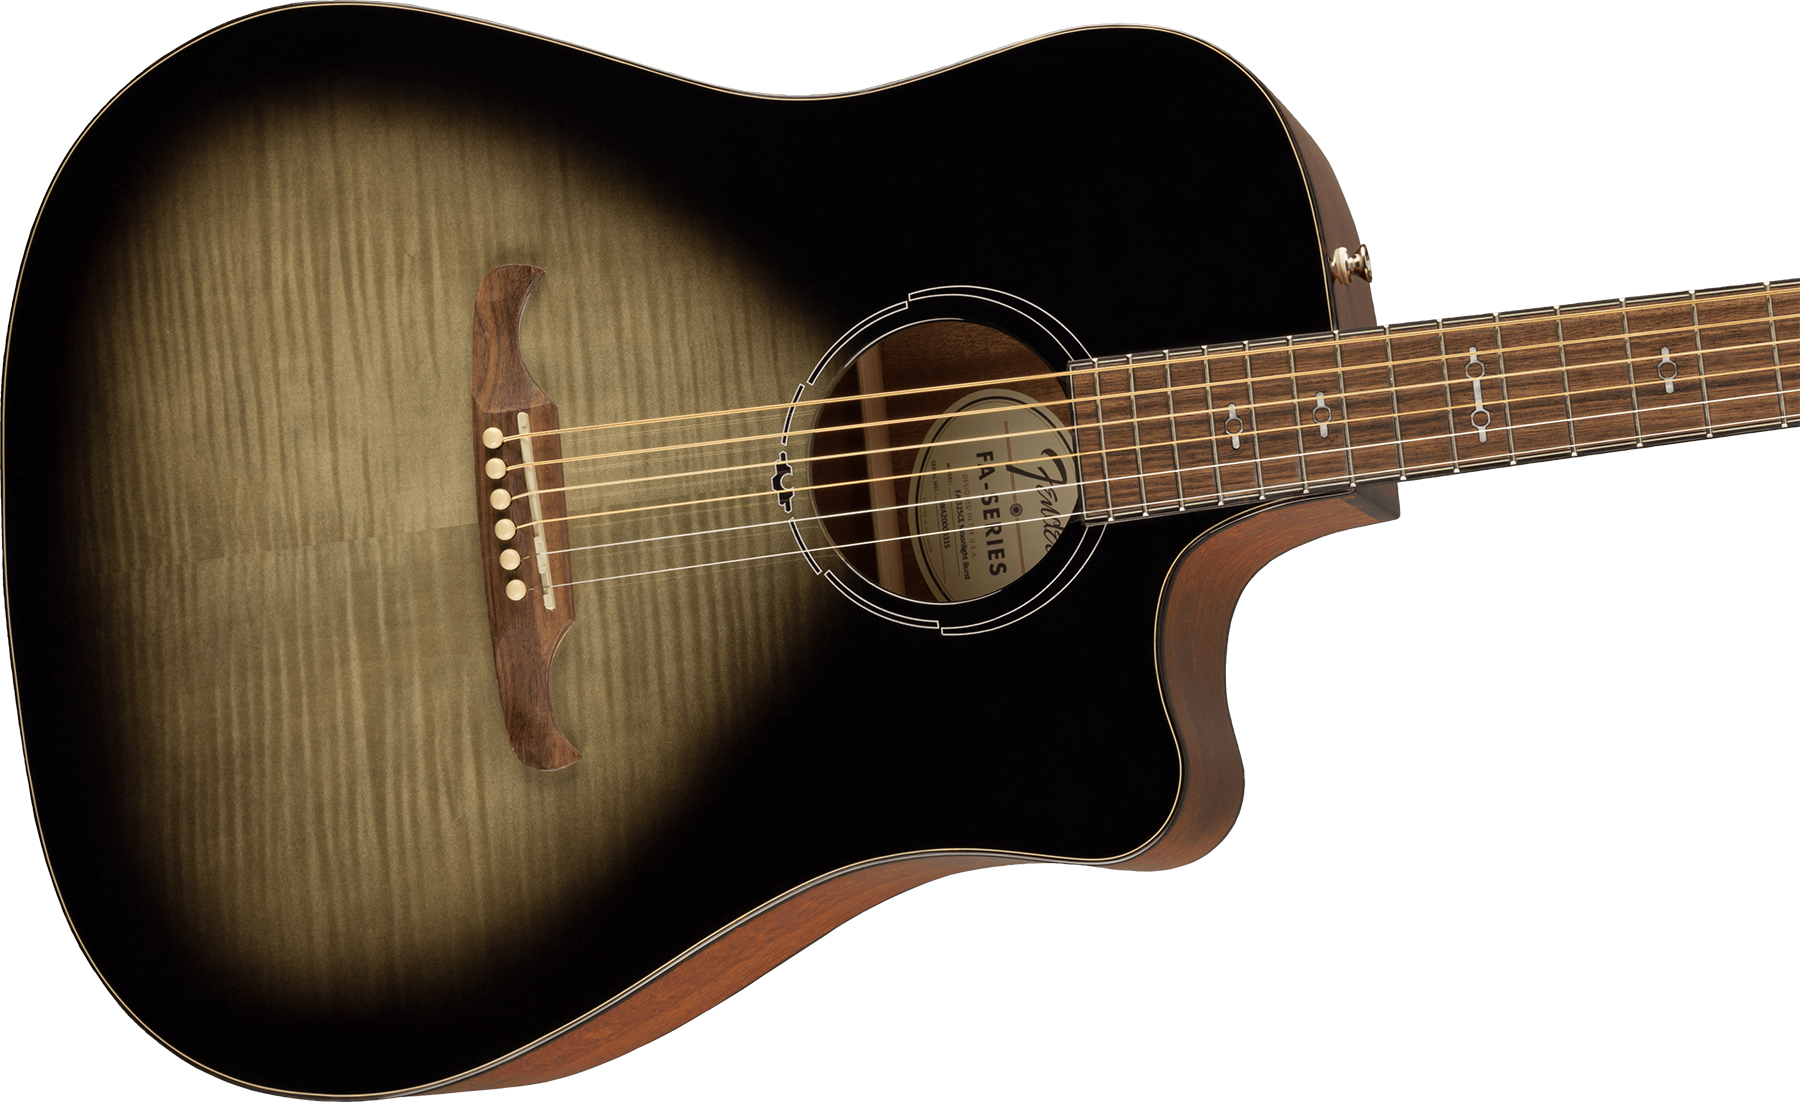 Fender Fa325ce Ltd Dreadnought Cw Erable Lacewood Lau - Moonlight Burst - Electro acoustic guitar - Variation 2